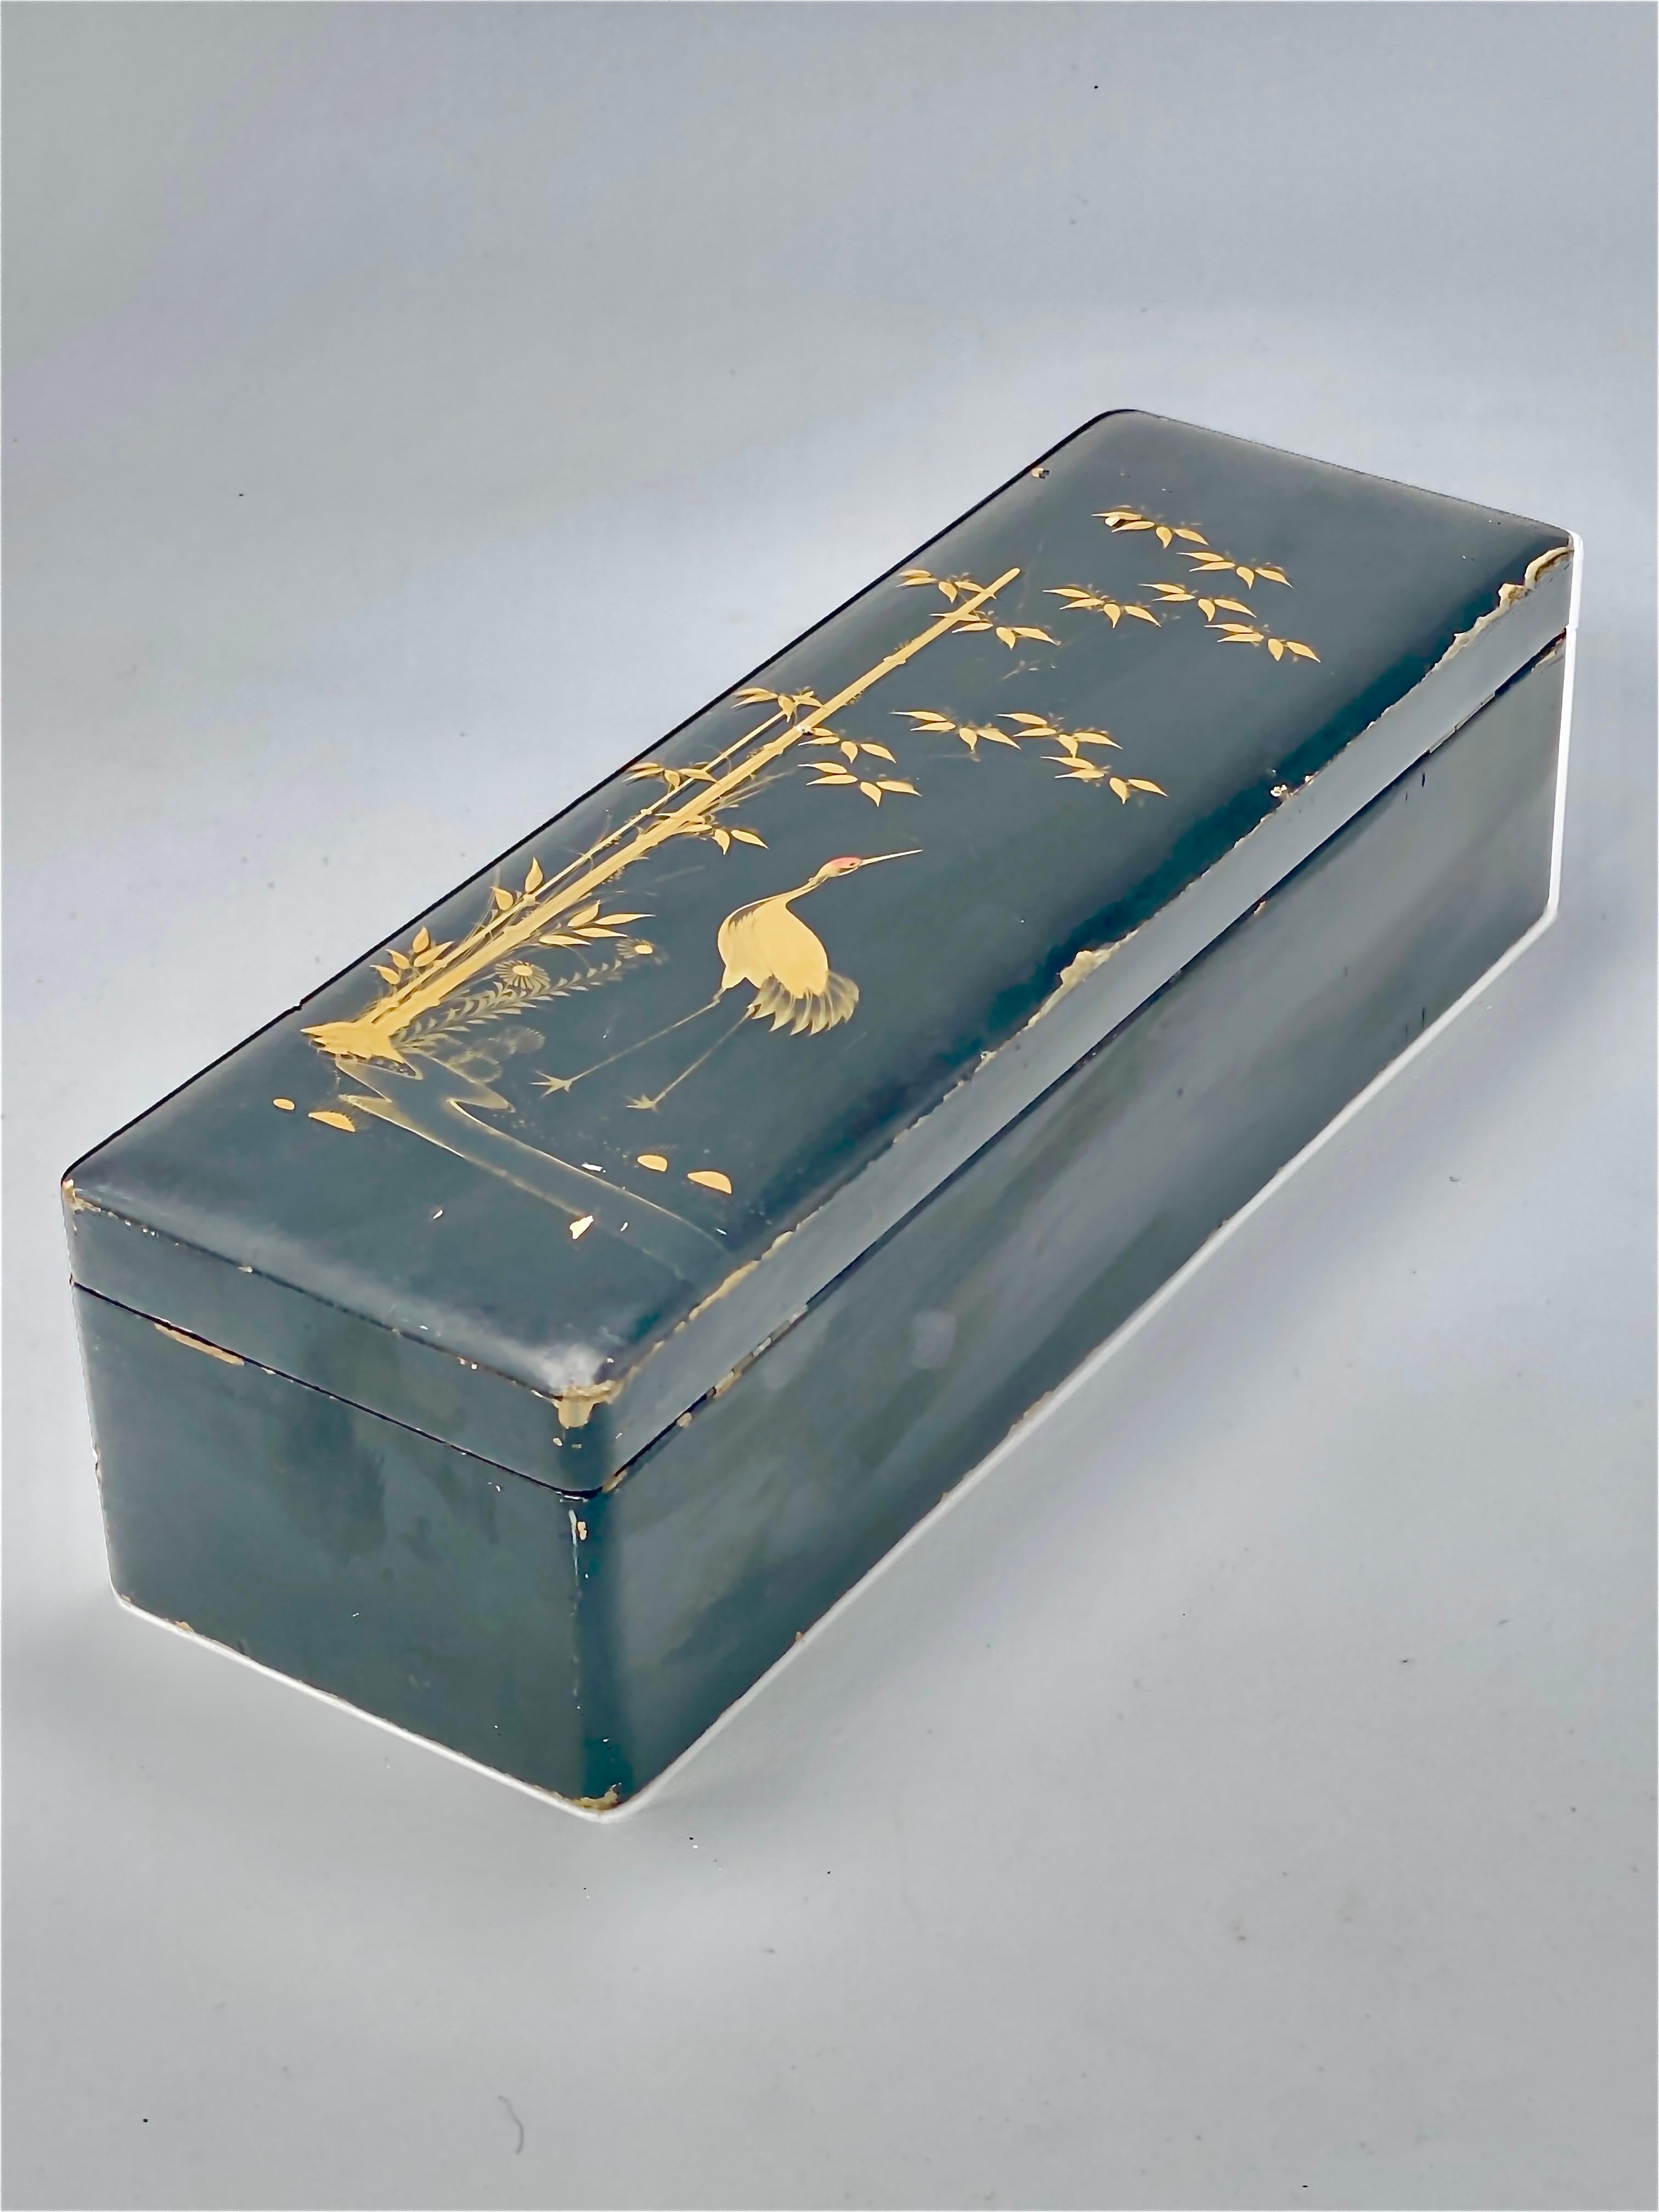 Diese Box ist aus Holz, schwarz lackiert. Mit Verzierung von Vögeln mit Goldfarbe.
Es wurde im 19. Jahrhundert in Japan angefertigt und ist schwarz gefärbt.